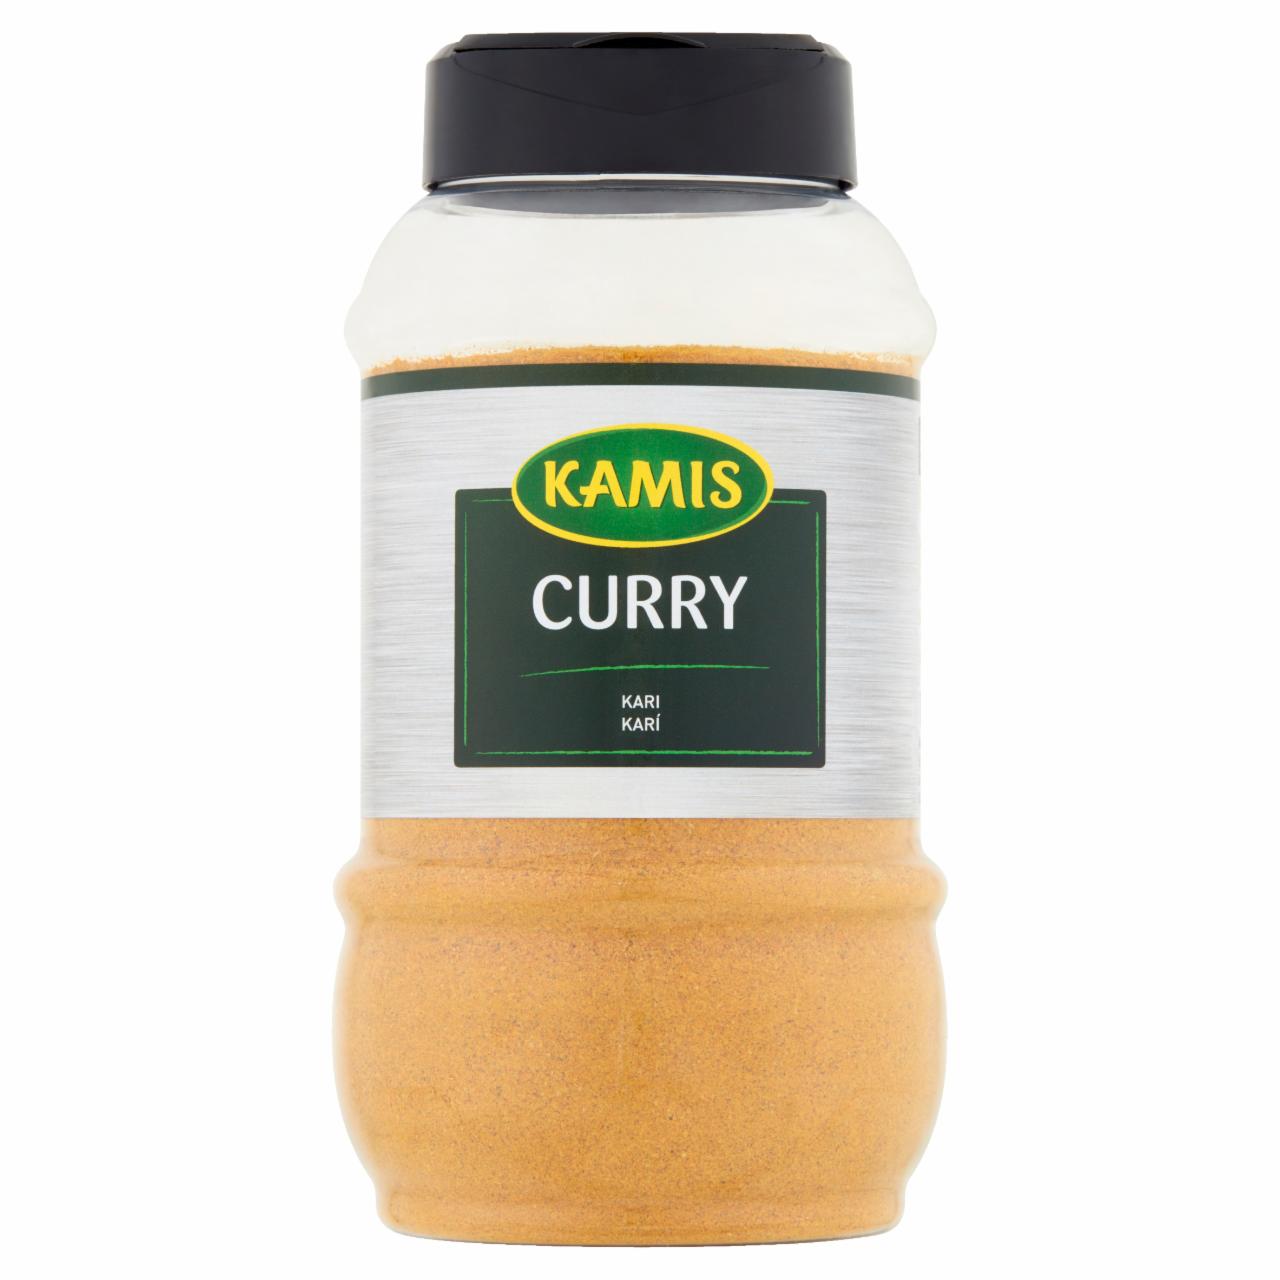 Zdjęcia - Kamis Curry 500 g